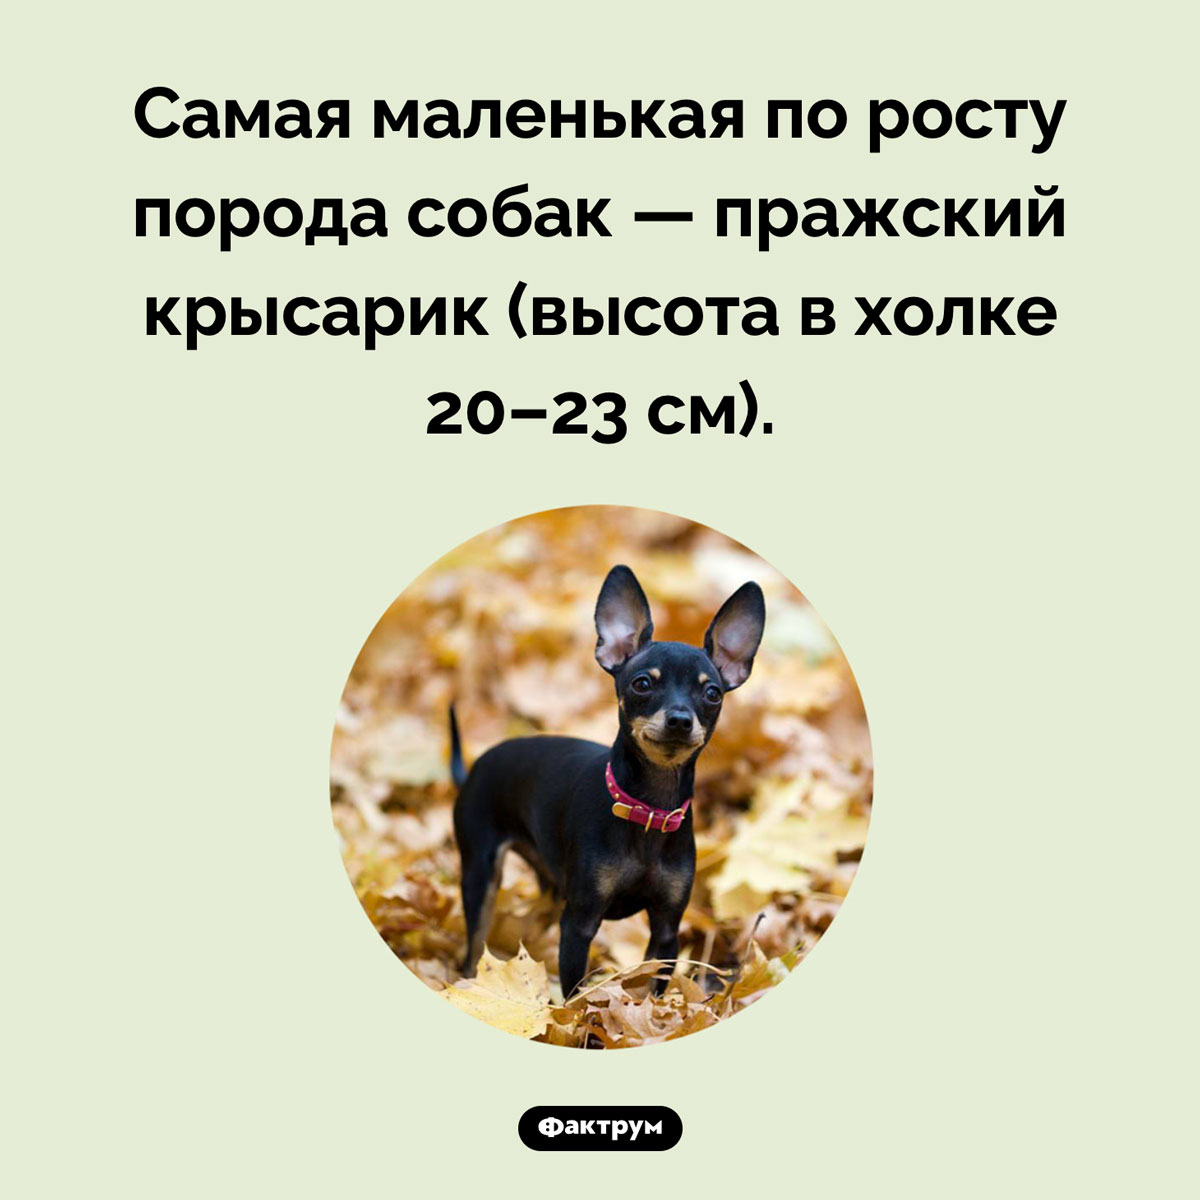 Самая маленькая порода собак. Самая маленькая по росту порода собак — пражский крысарик (высота в холке 20–23 см).